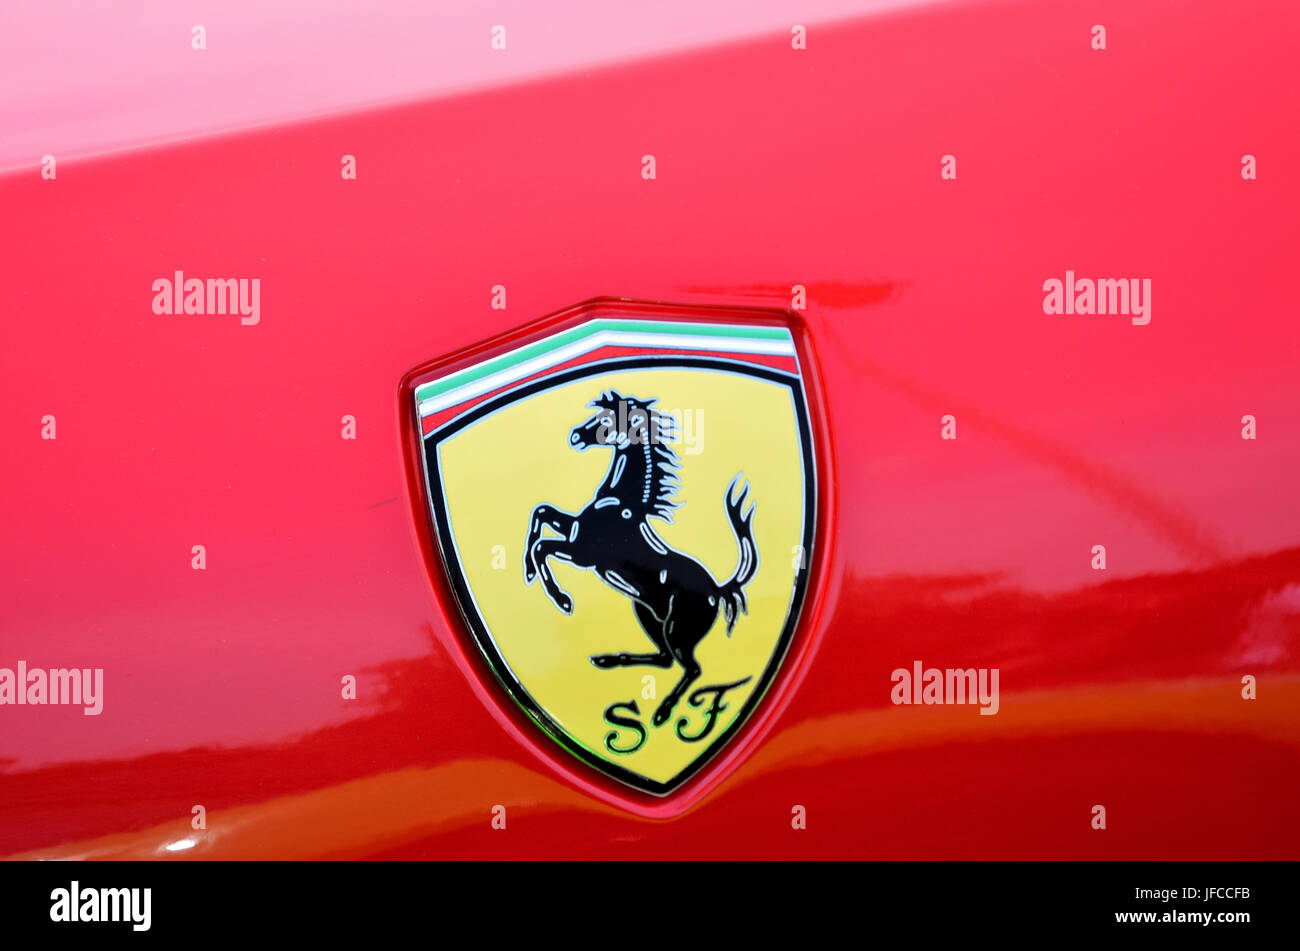 Red Ferrari, horse logo. Stock Photo